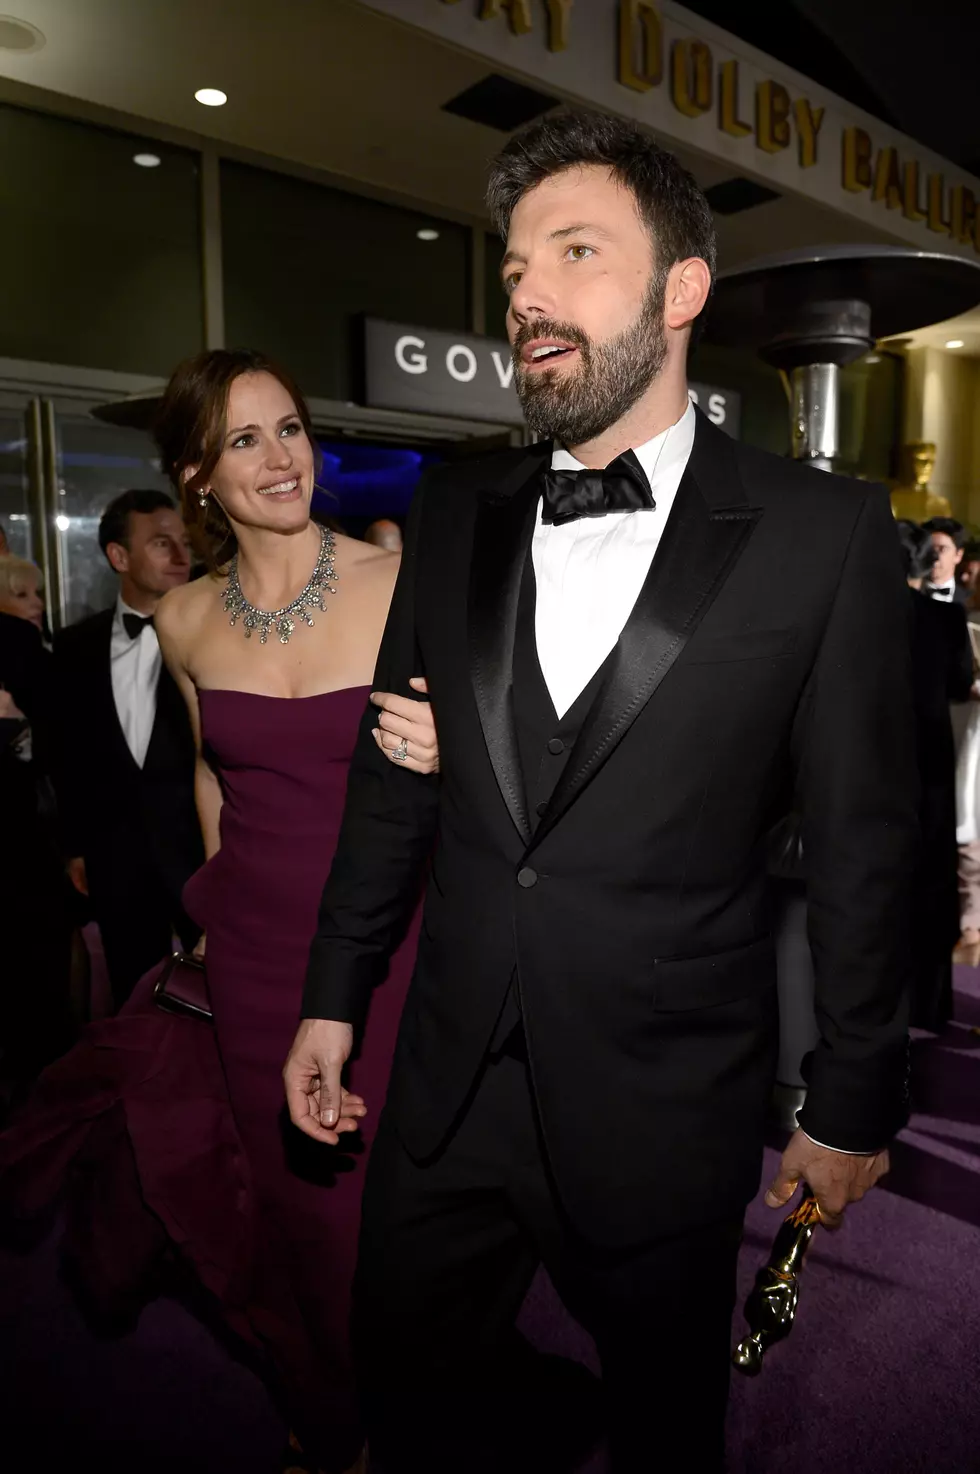 Ben Affleck On Split From Jennifer Garner: ‘We’re On Great Terms’